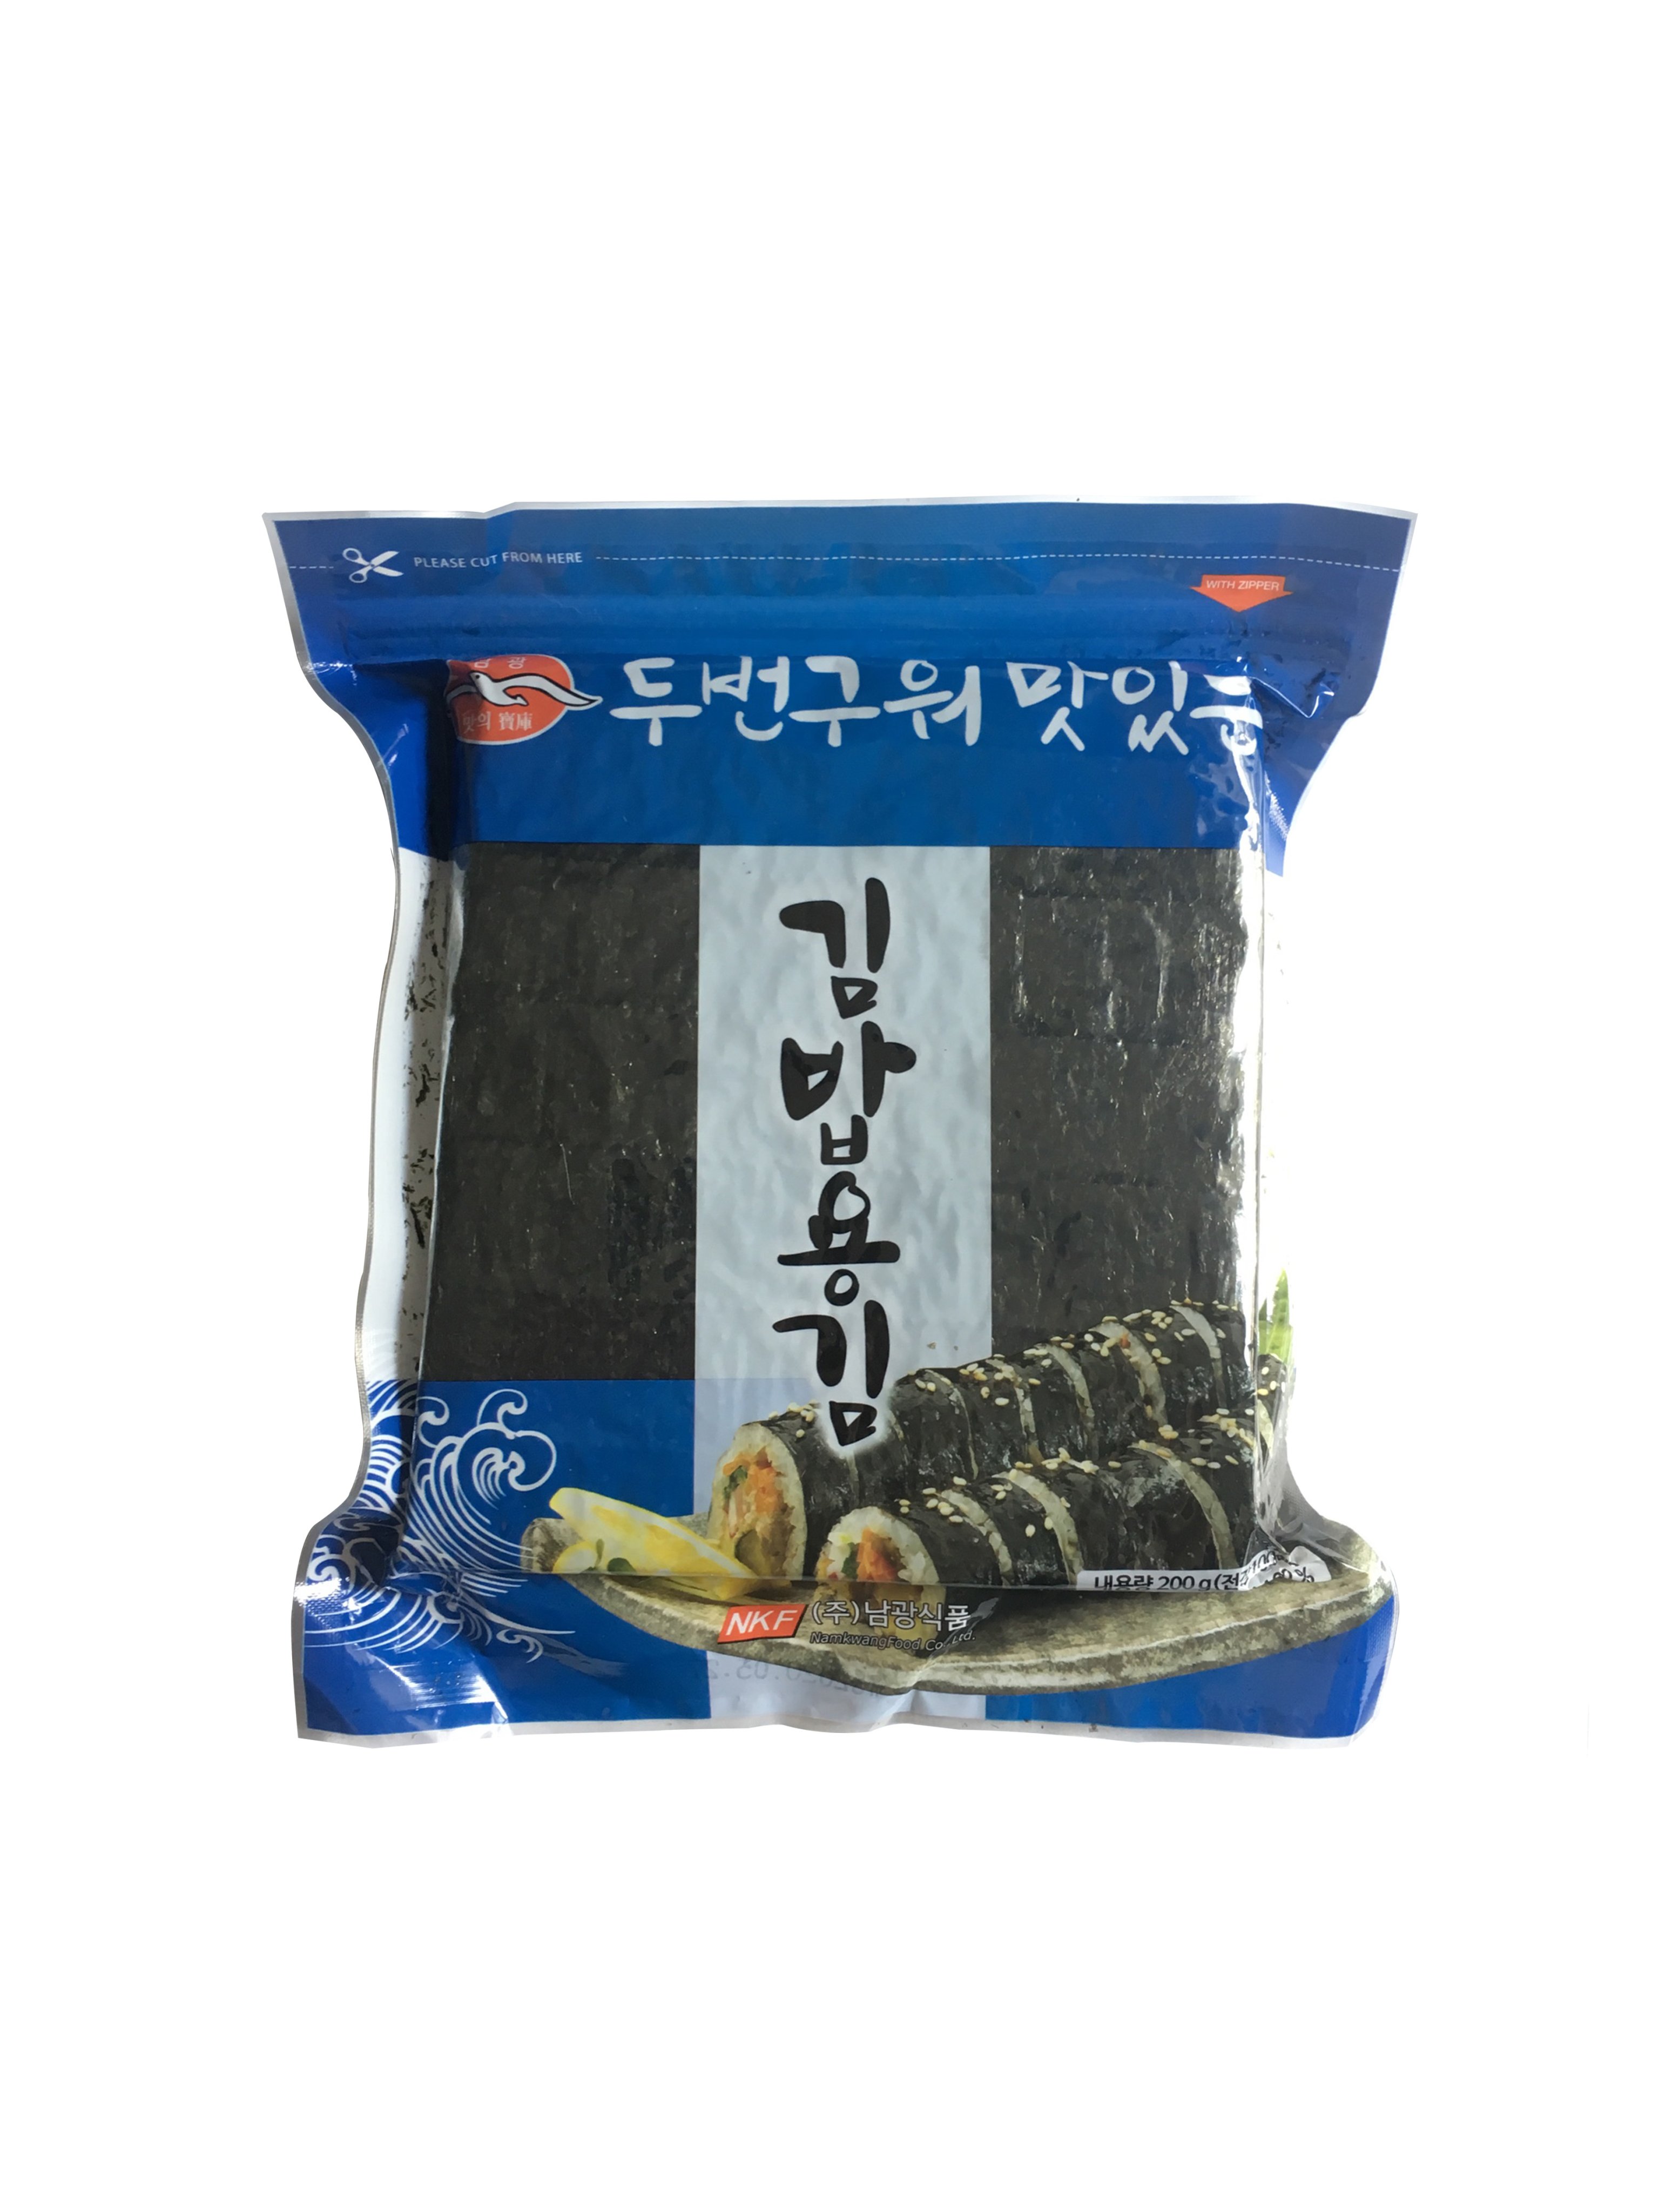 Rong biển cuộn cơm 100 lá Hàn Quốc 200g gói